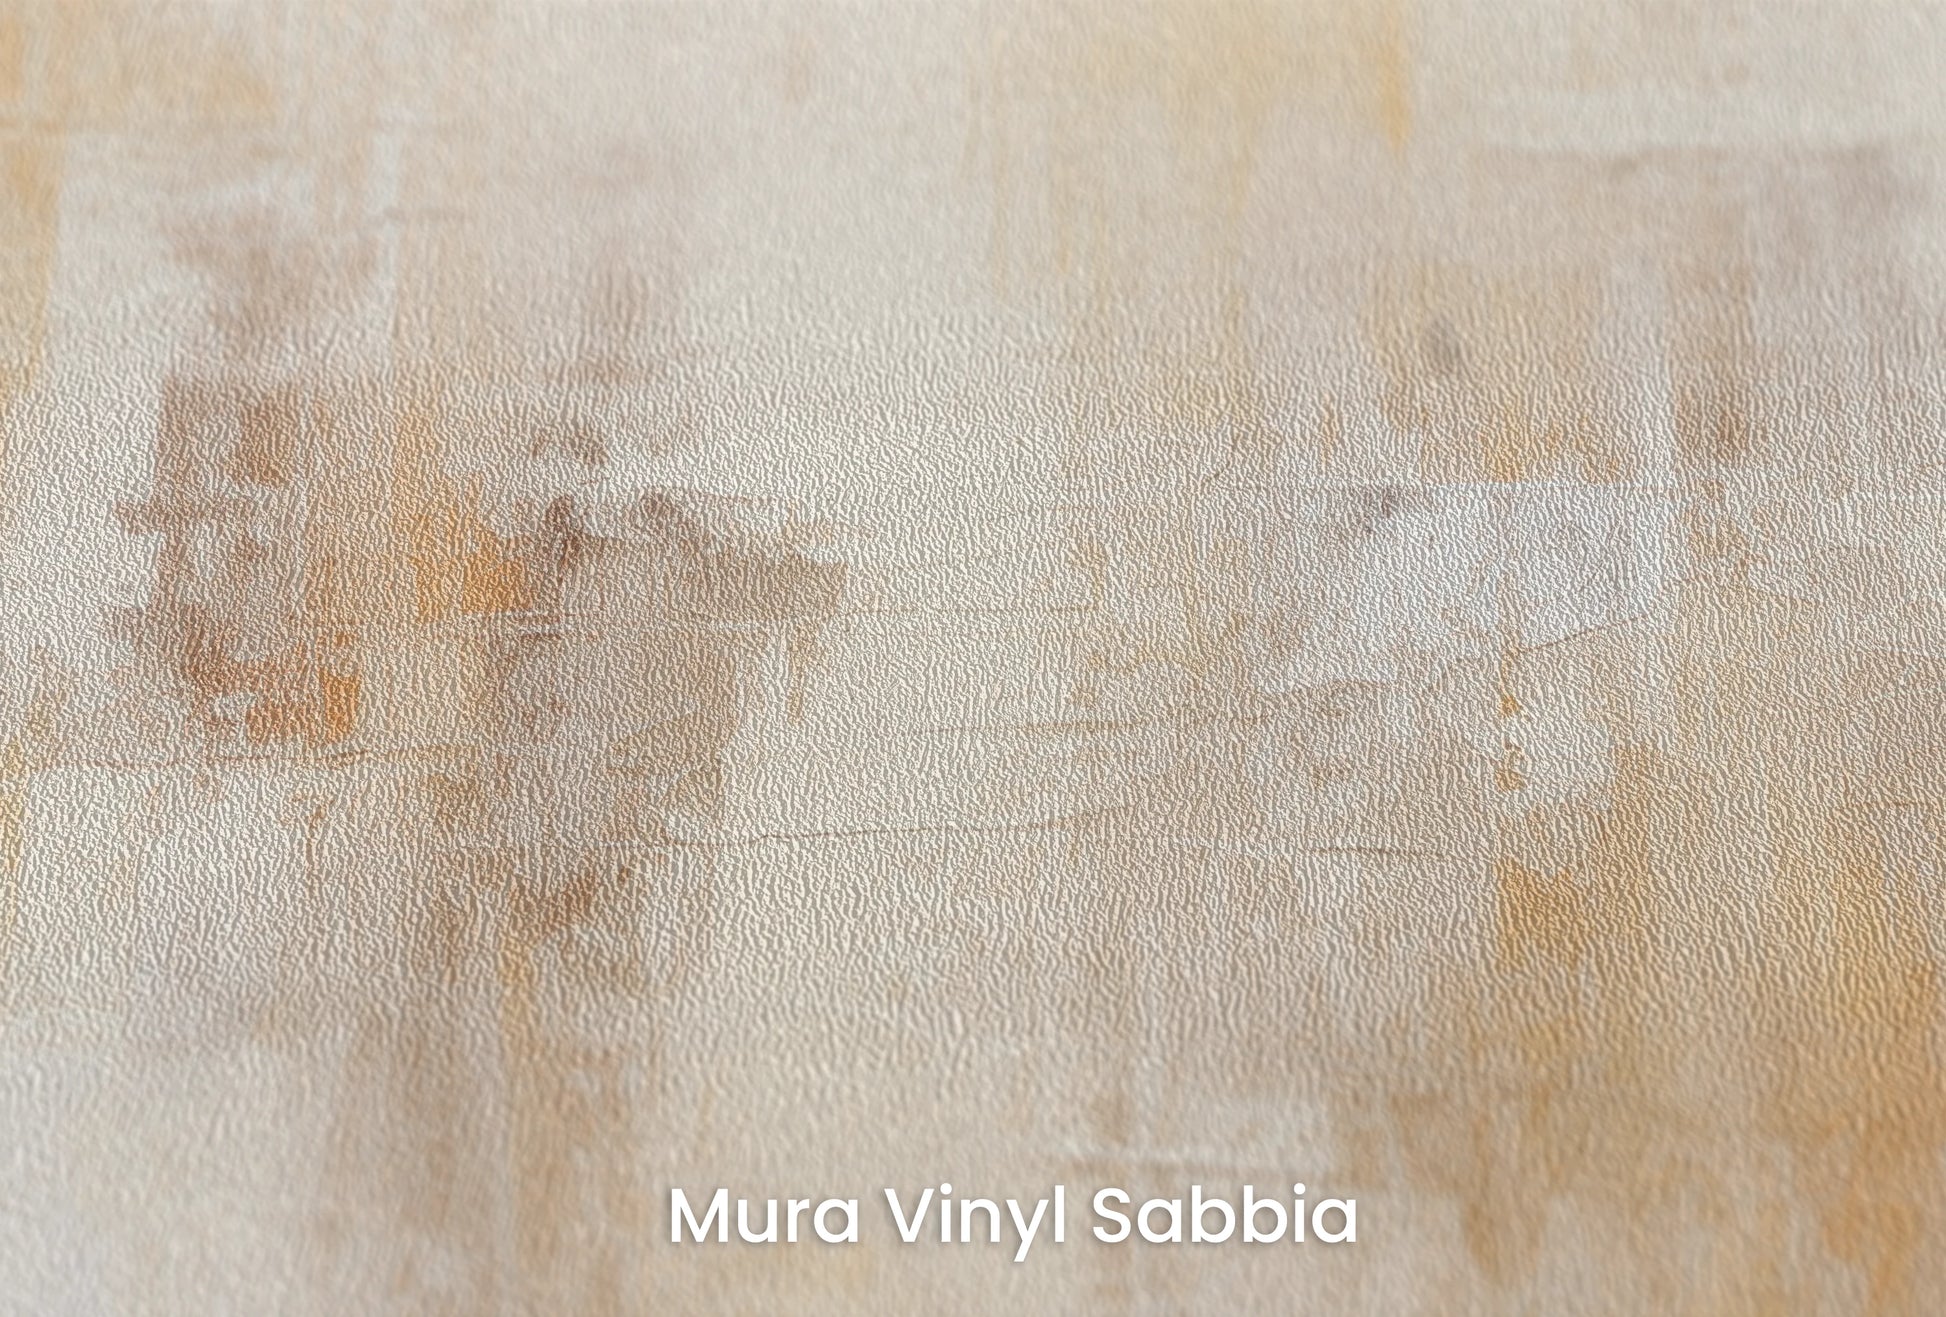 Zbliżenie na artystyczną fototapetę o nazwie Amber Whisper na podłożu Mura Vinyl Sabbia struktura grubego ziarna piasku.